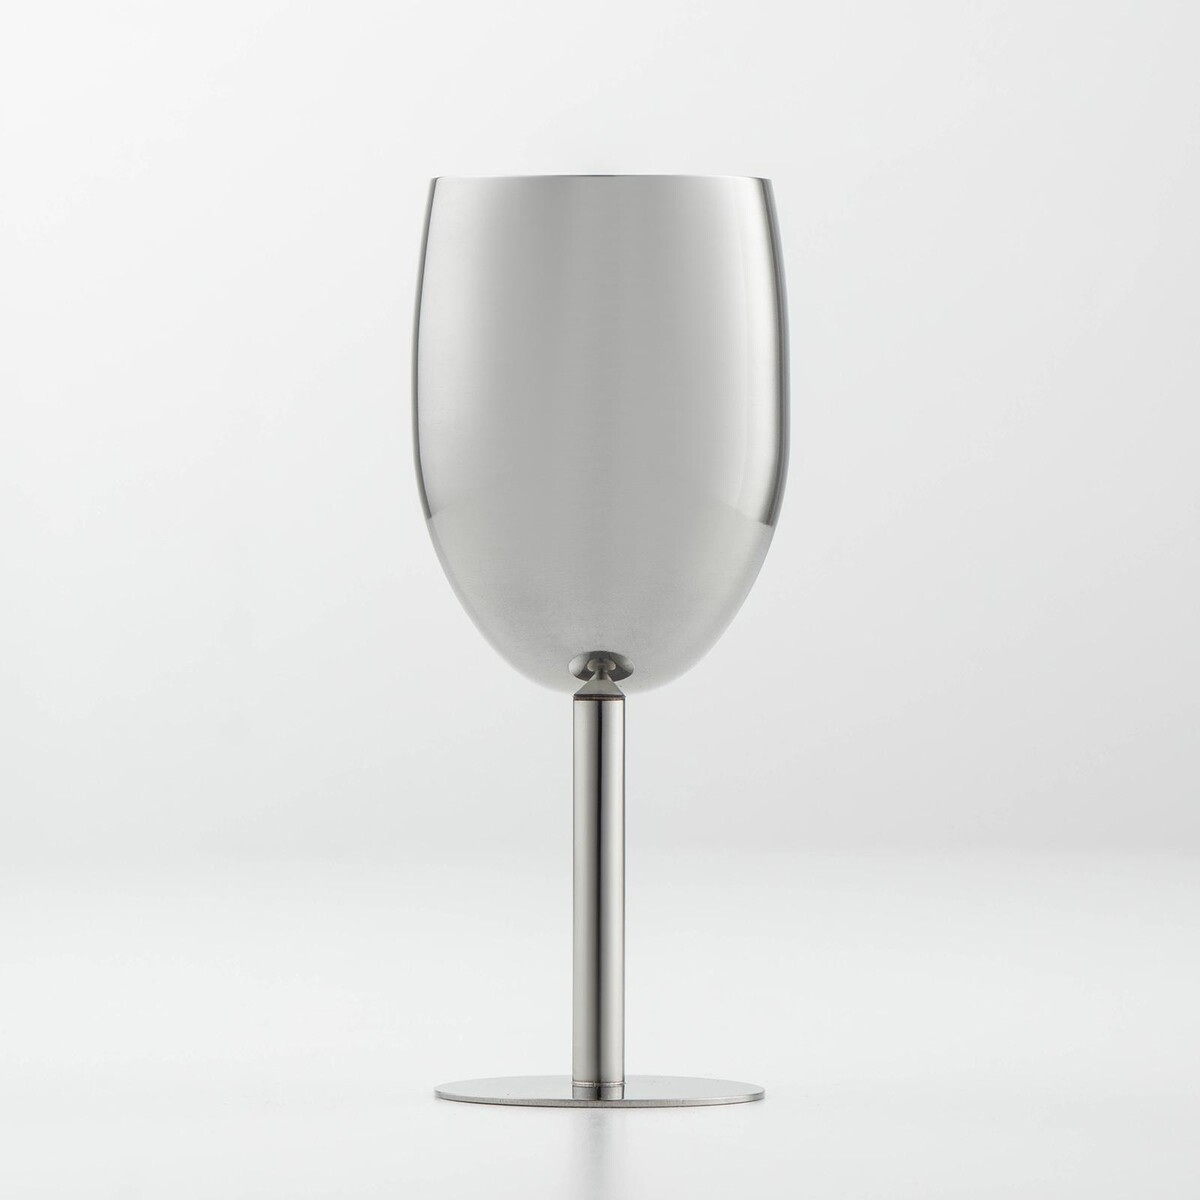 Бокал винный из нержавеющей стали для коктейлей, 17×7 см, цвет хромированный бокал для вина 590 мл стекло pasabahce enoteca 44738slb